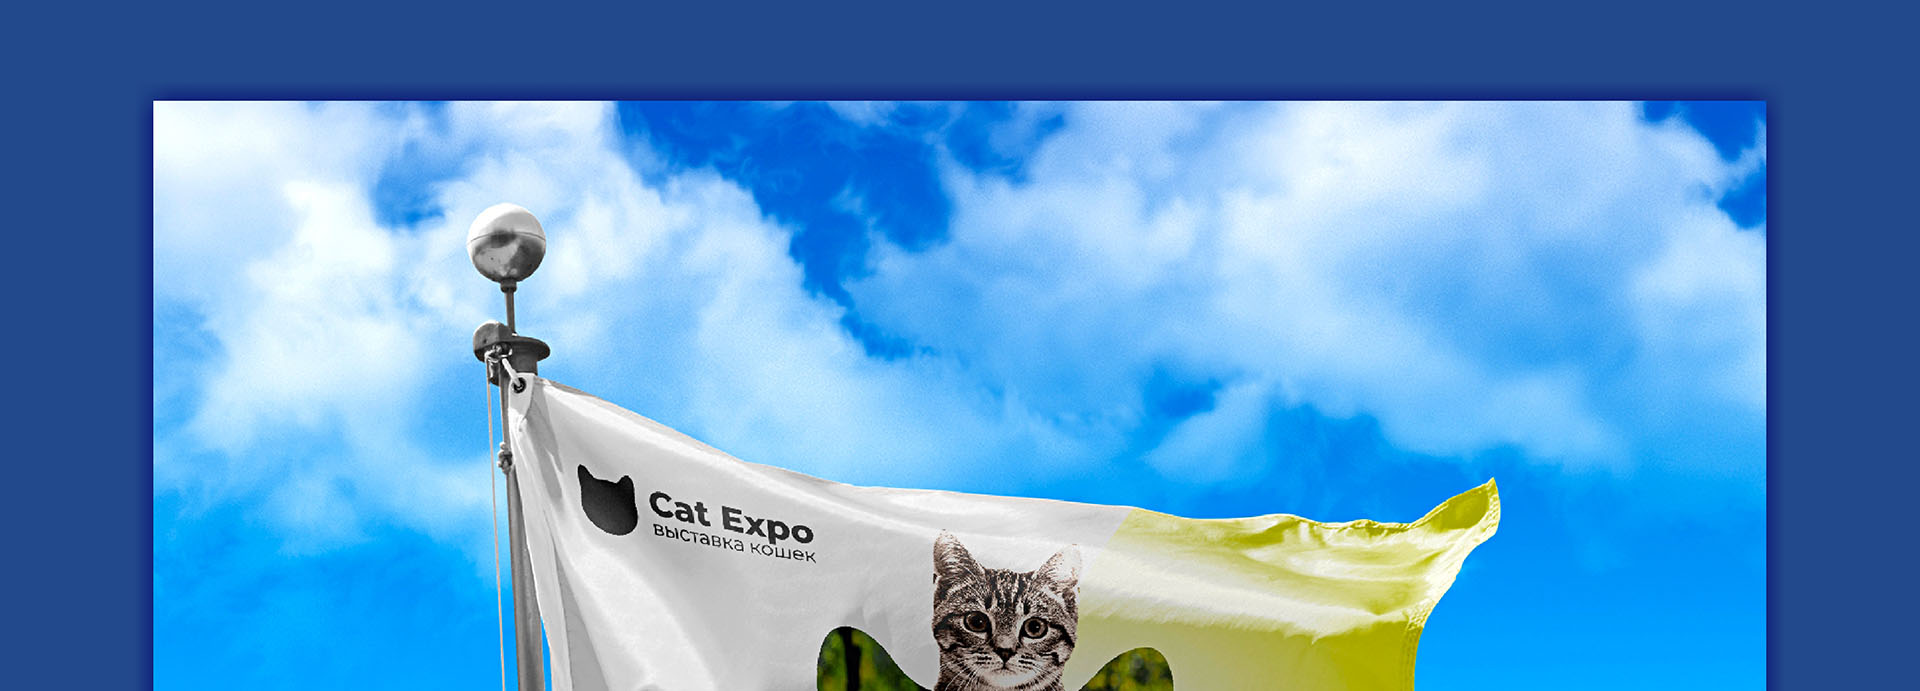 Cat Expo 5